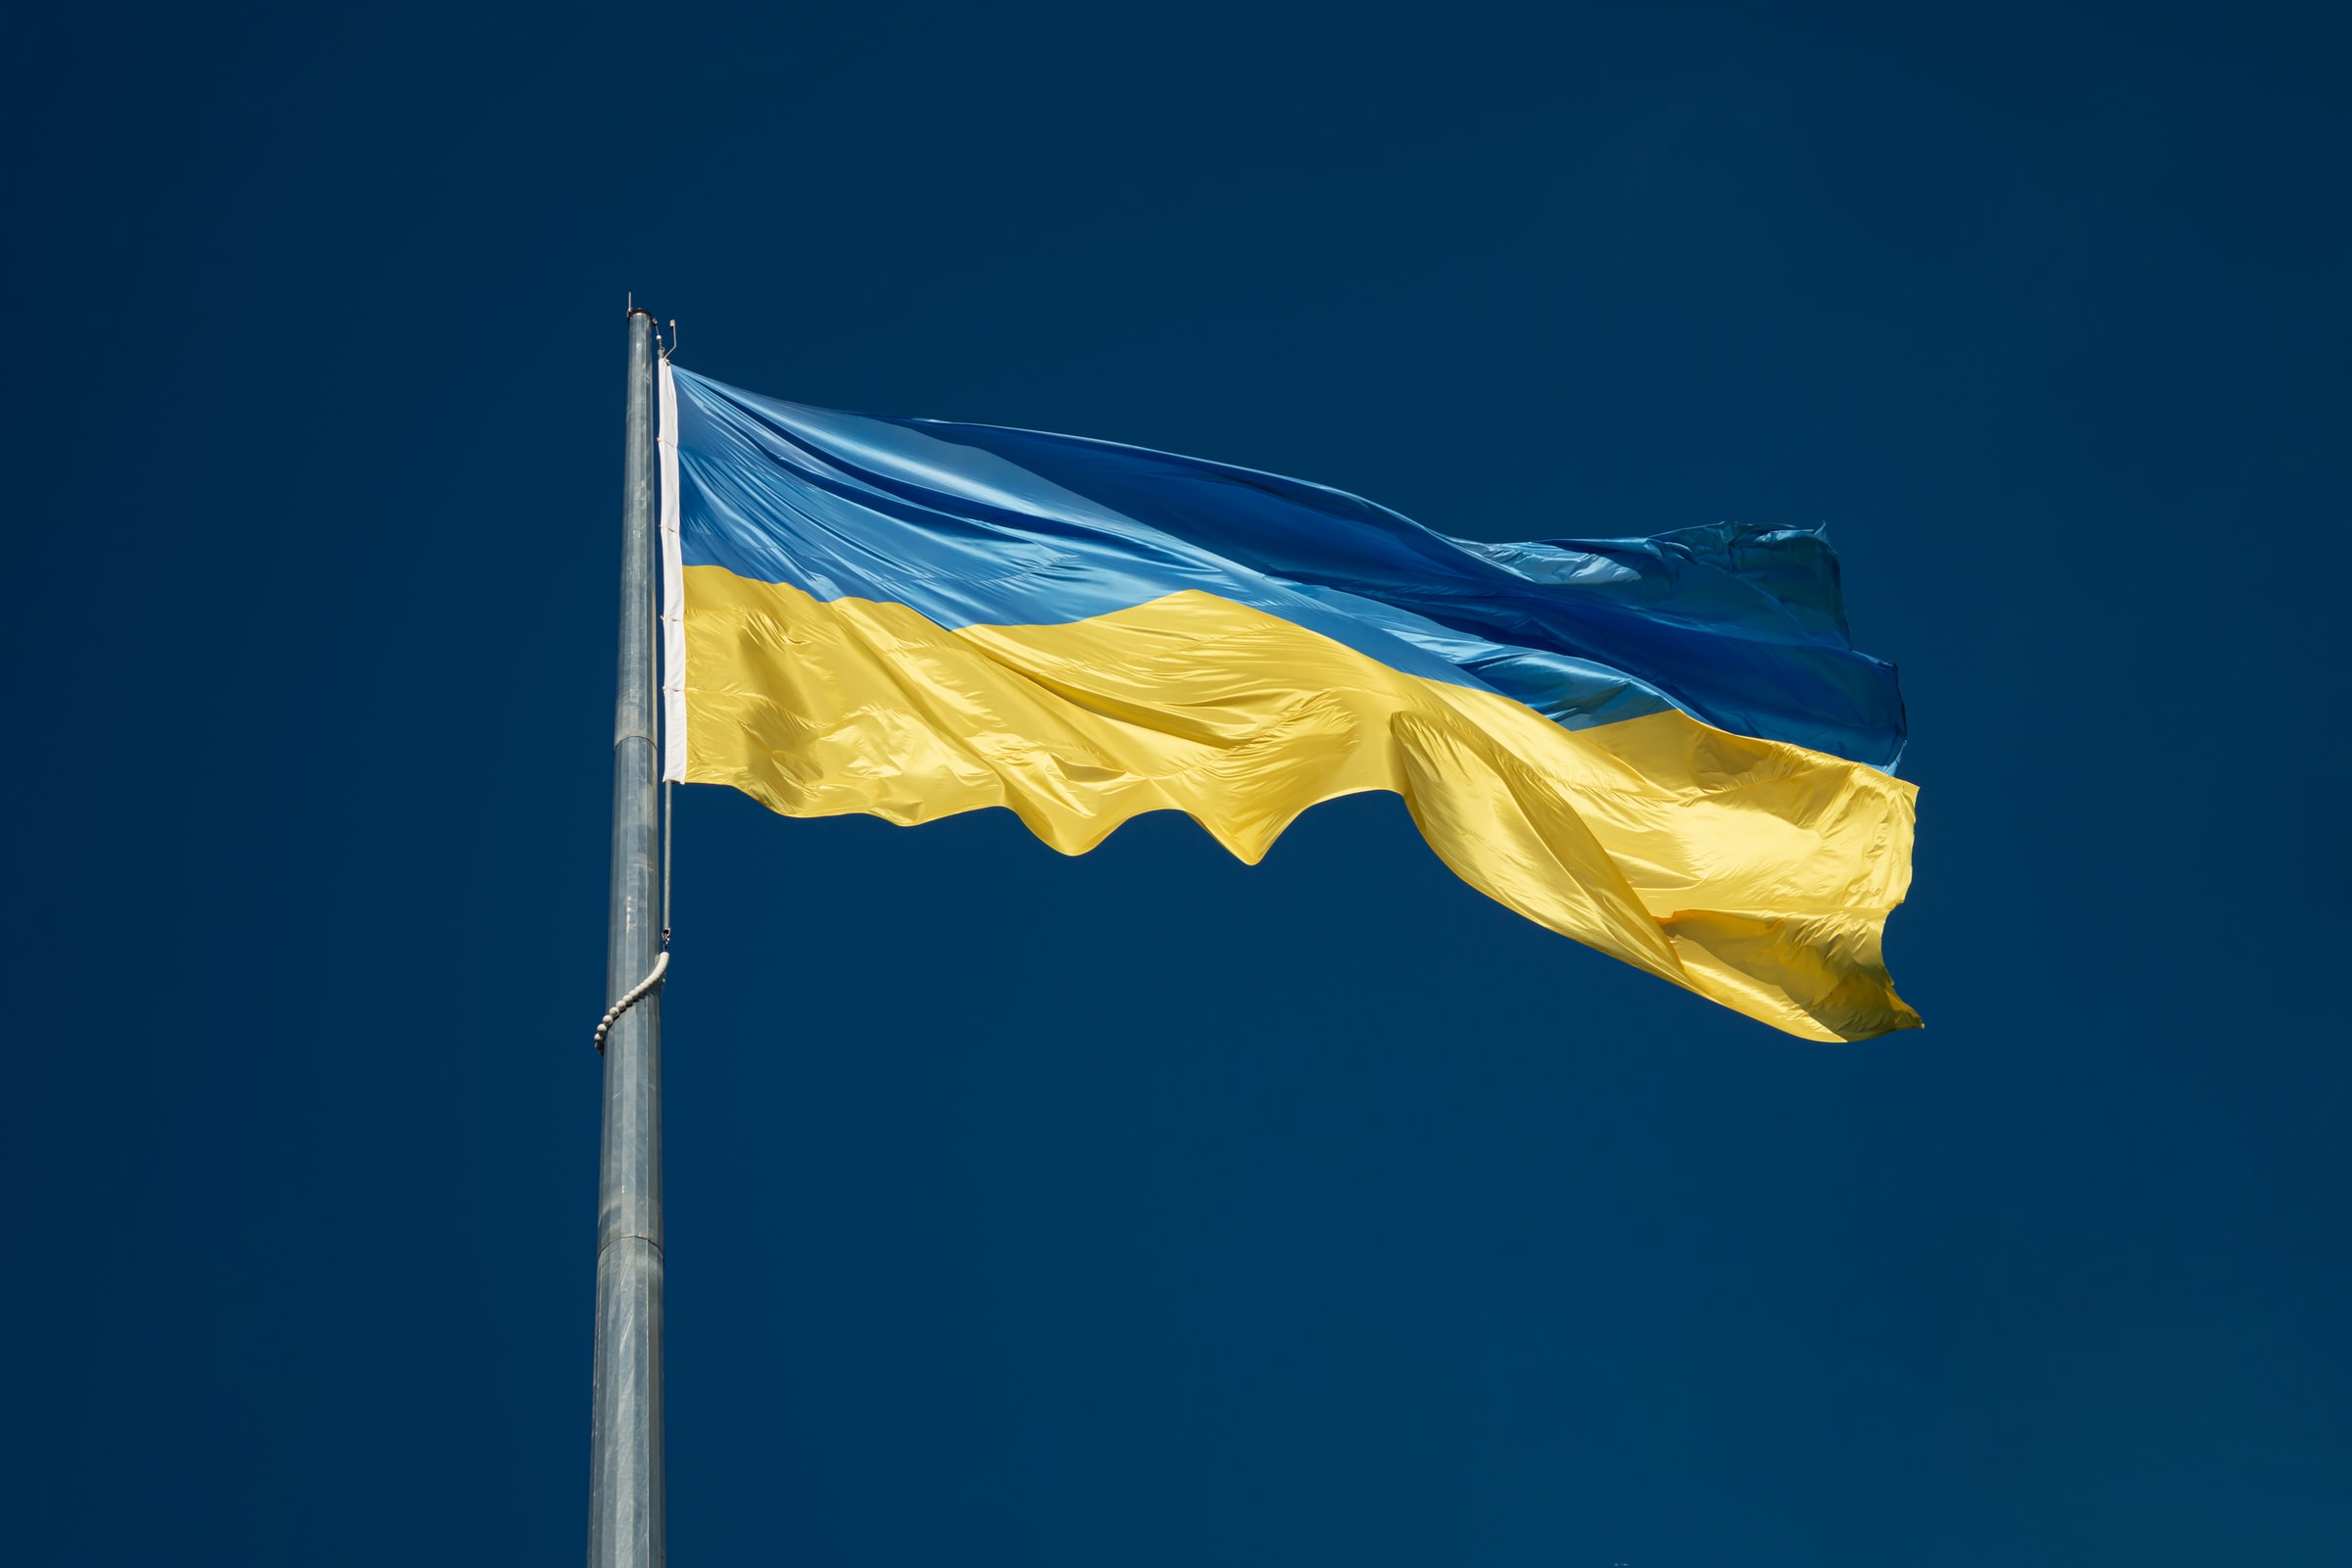 Ukrainas flagg i blått og gult mot en mørk blå himmel.